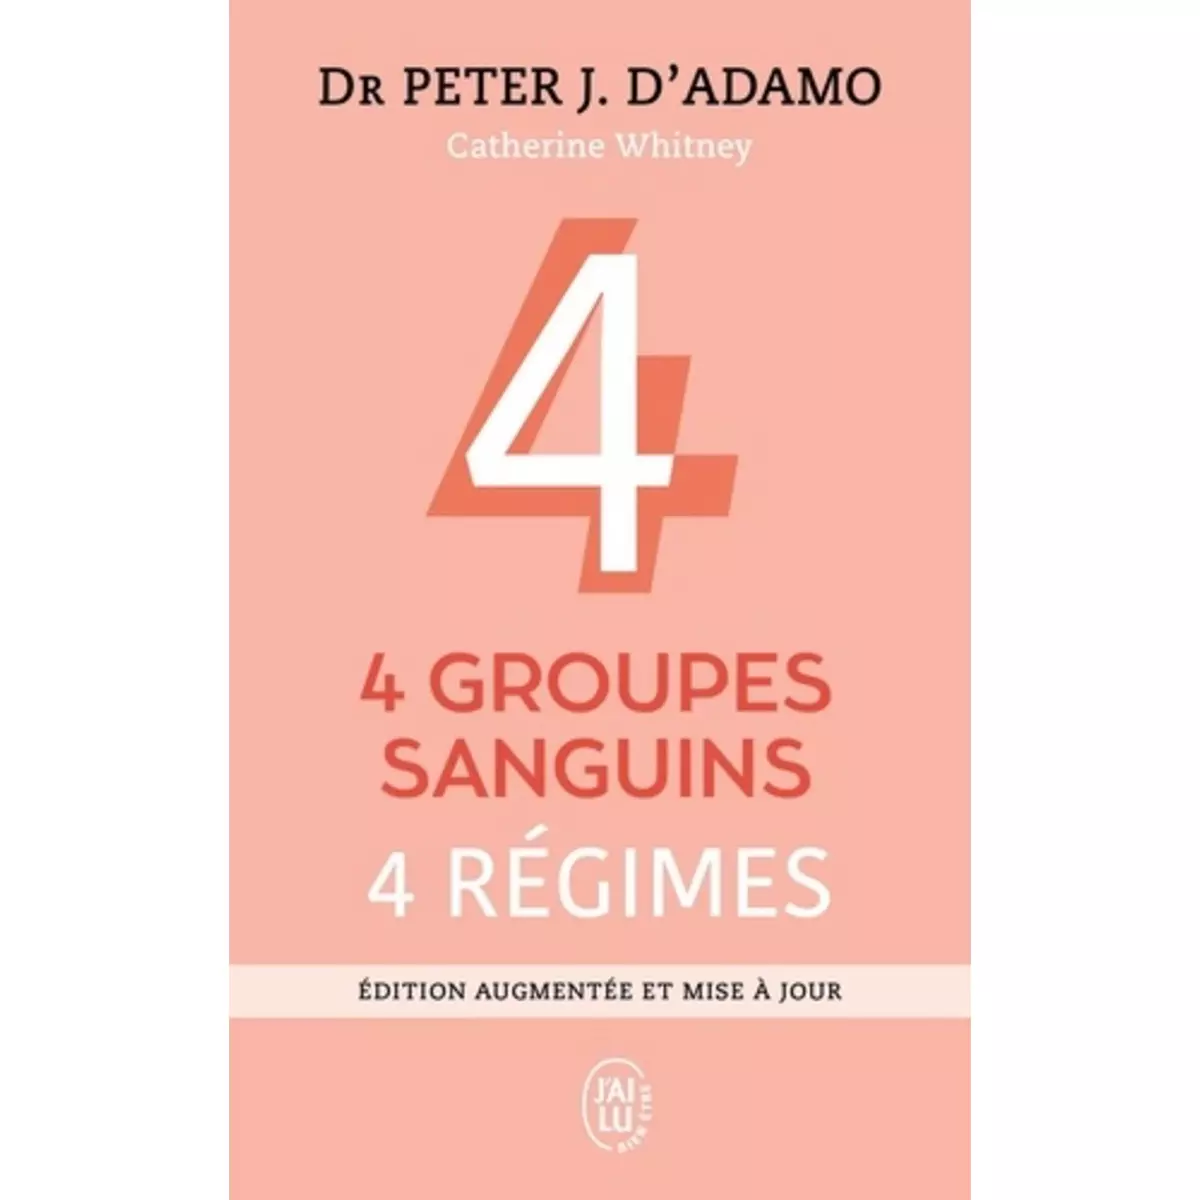  4 GROUPES SANGUINS, 4 REGIMES. EDITION REVUE ET AUGMENTEE, D'Adamo Peter-J